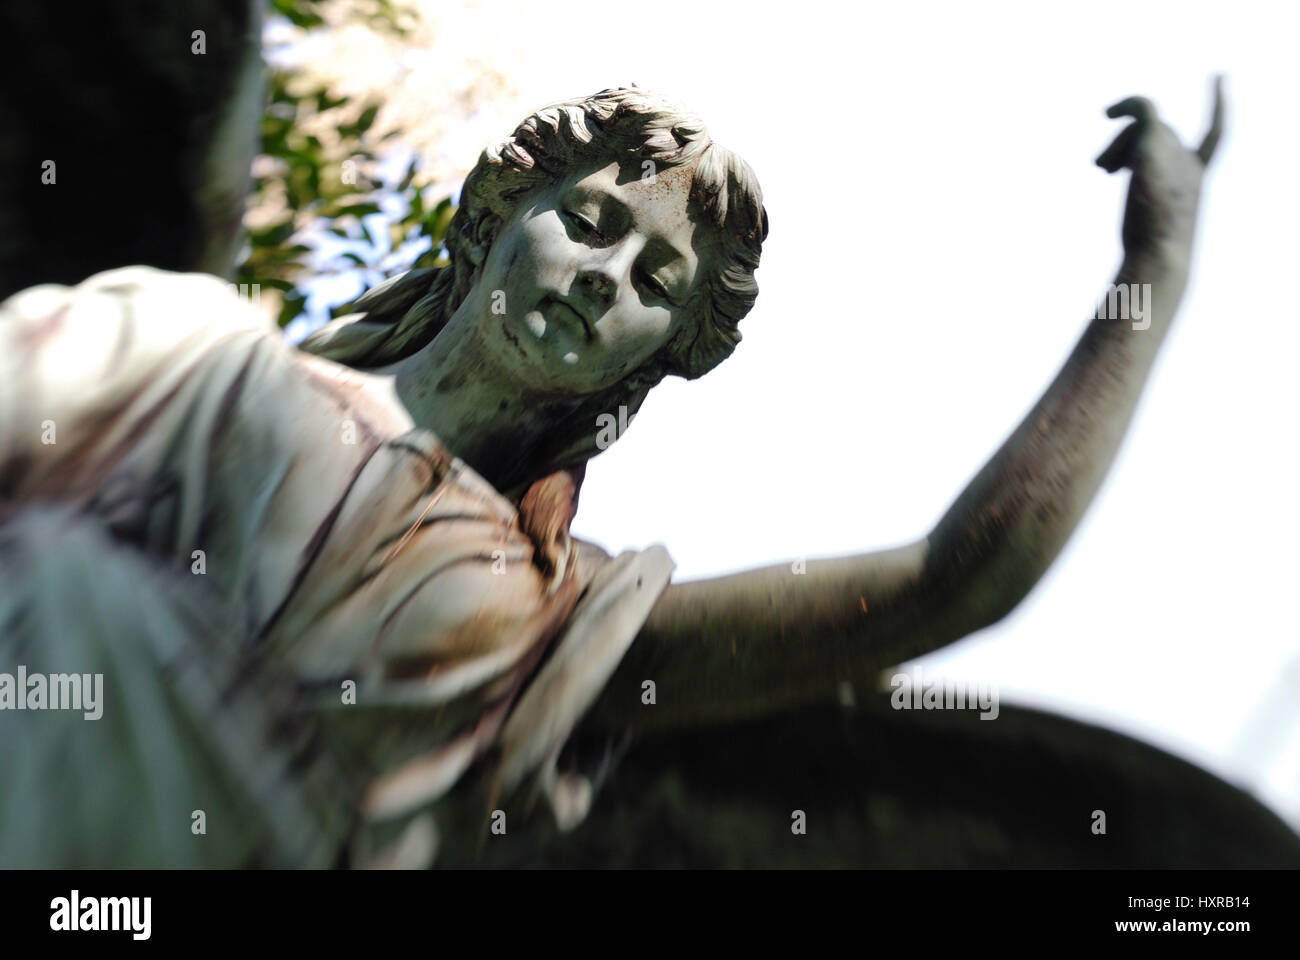 Angel's statue on the Ohlsdorfer cemetery in village Ohls, Hamburg, Germany, Europe, Engelsstatue auf dem Ohlsdorfer Friedhof in Ohlsdorf, Deutschland Stock Photo